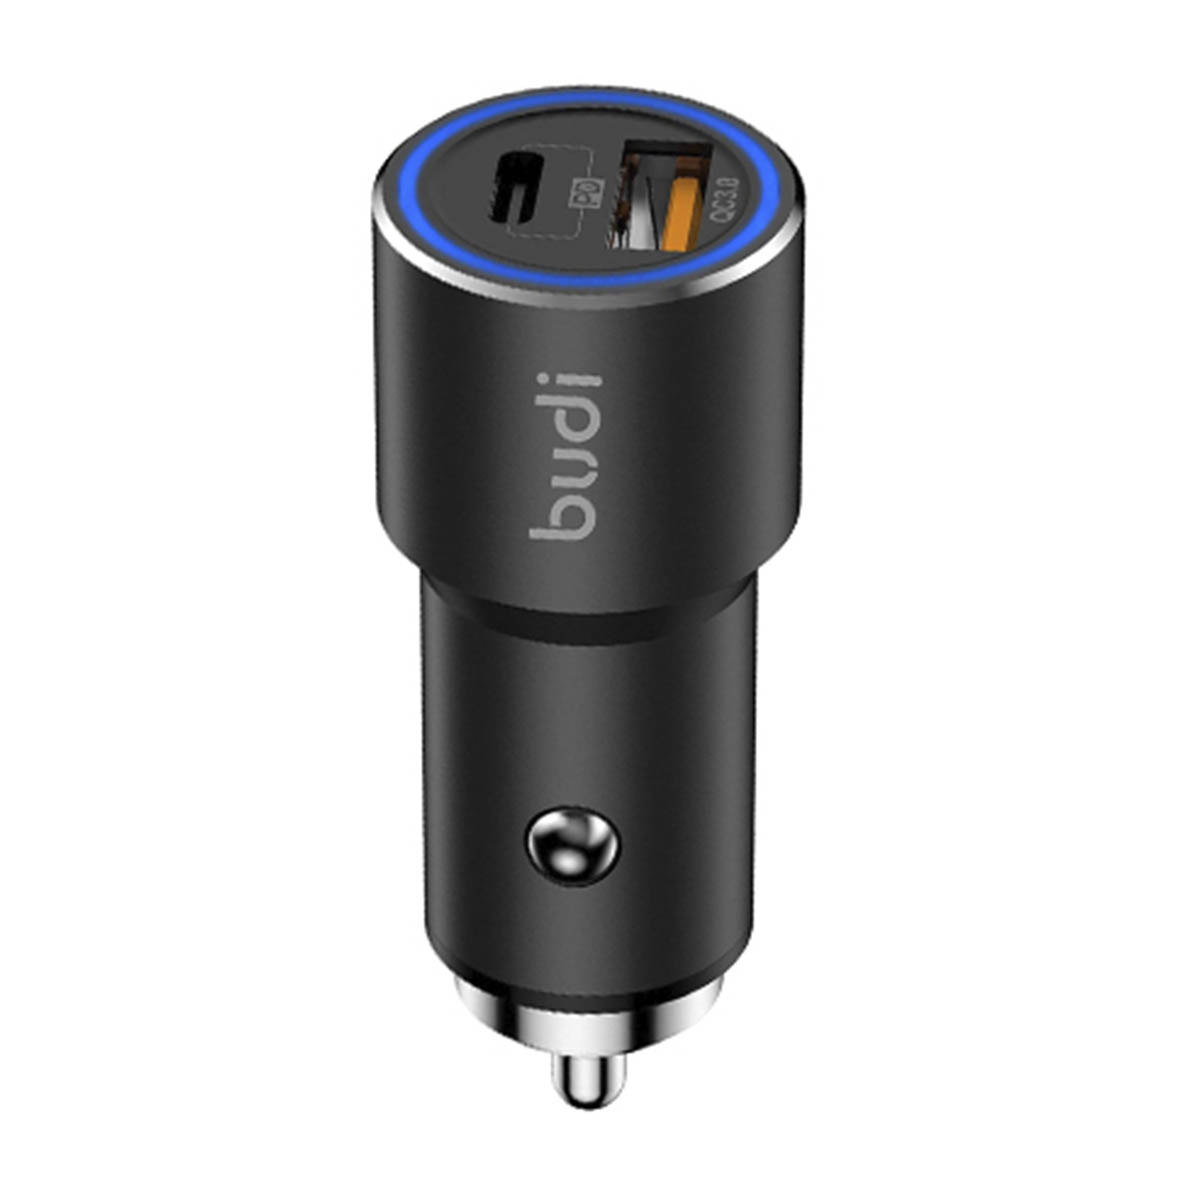 АЗУ (Автомобильное зарядное устройство) BUDI, 38W, 1 USB, USB Type C, цвет черный